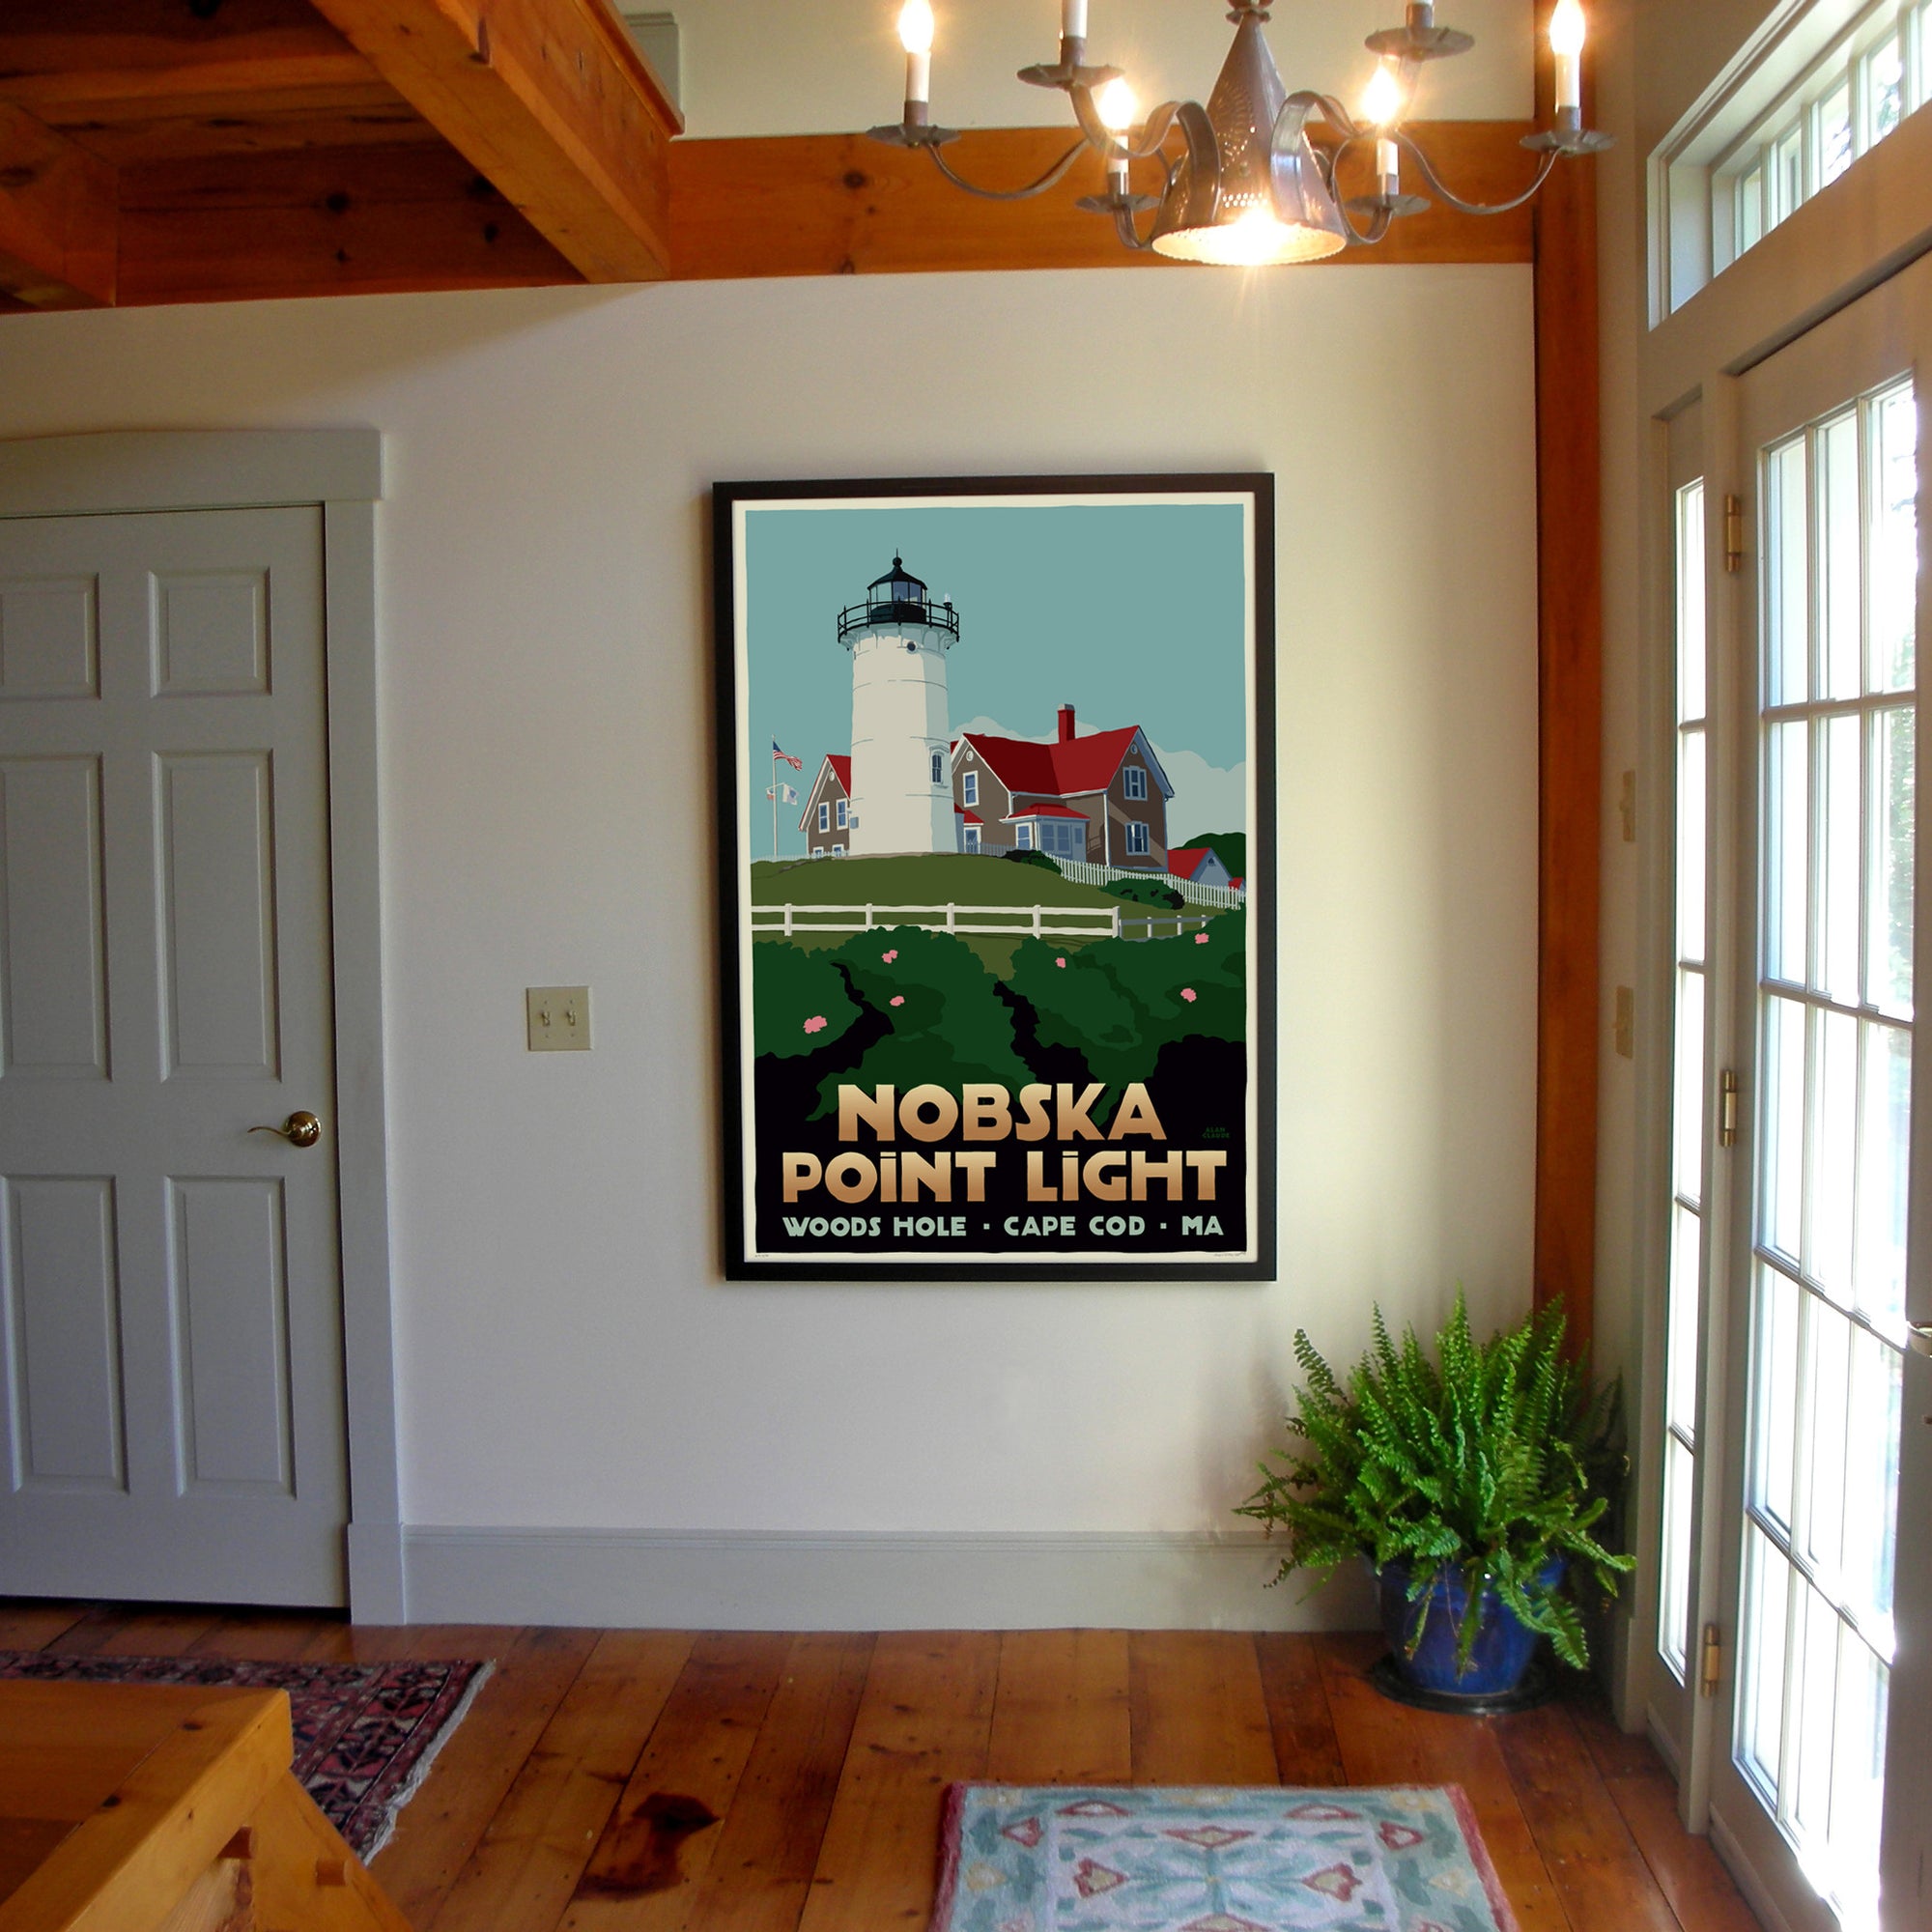 Nobska Point Light Art Print 36" x 53" Framed Travel Poster By Alan Claude - Massachusetts